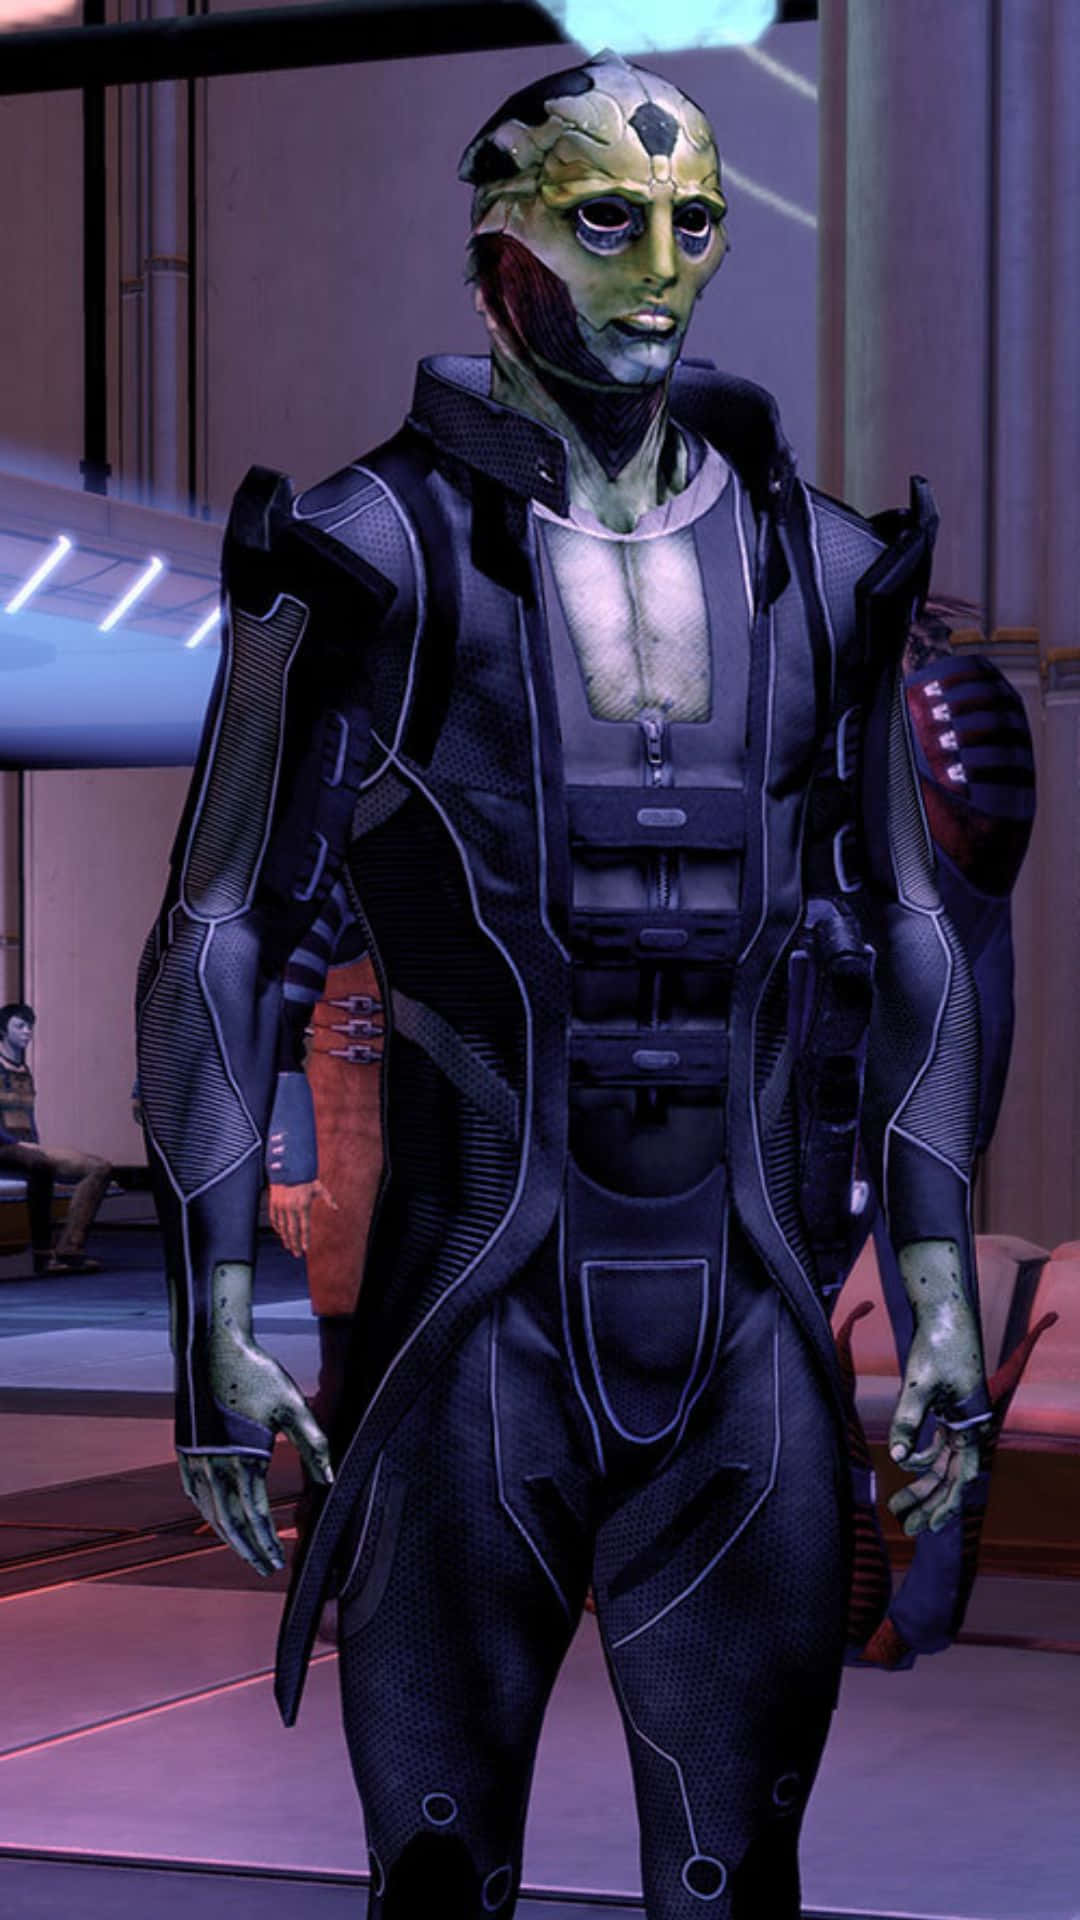 Thane Krios - Fierce Assassin of Mass Effect Wallpaper